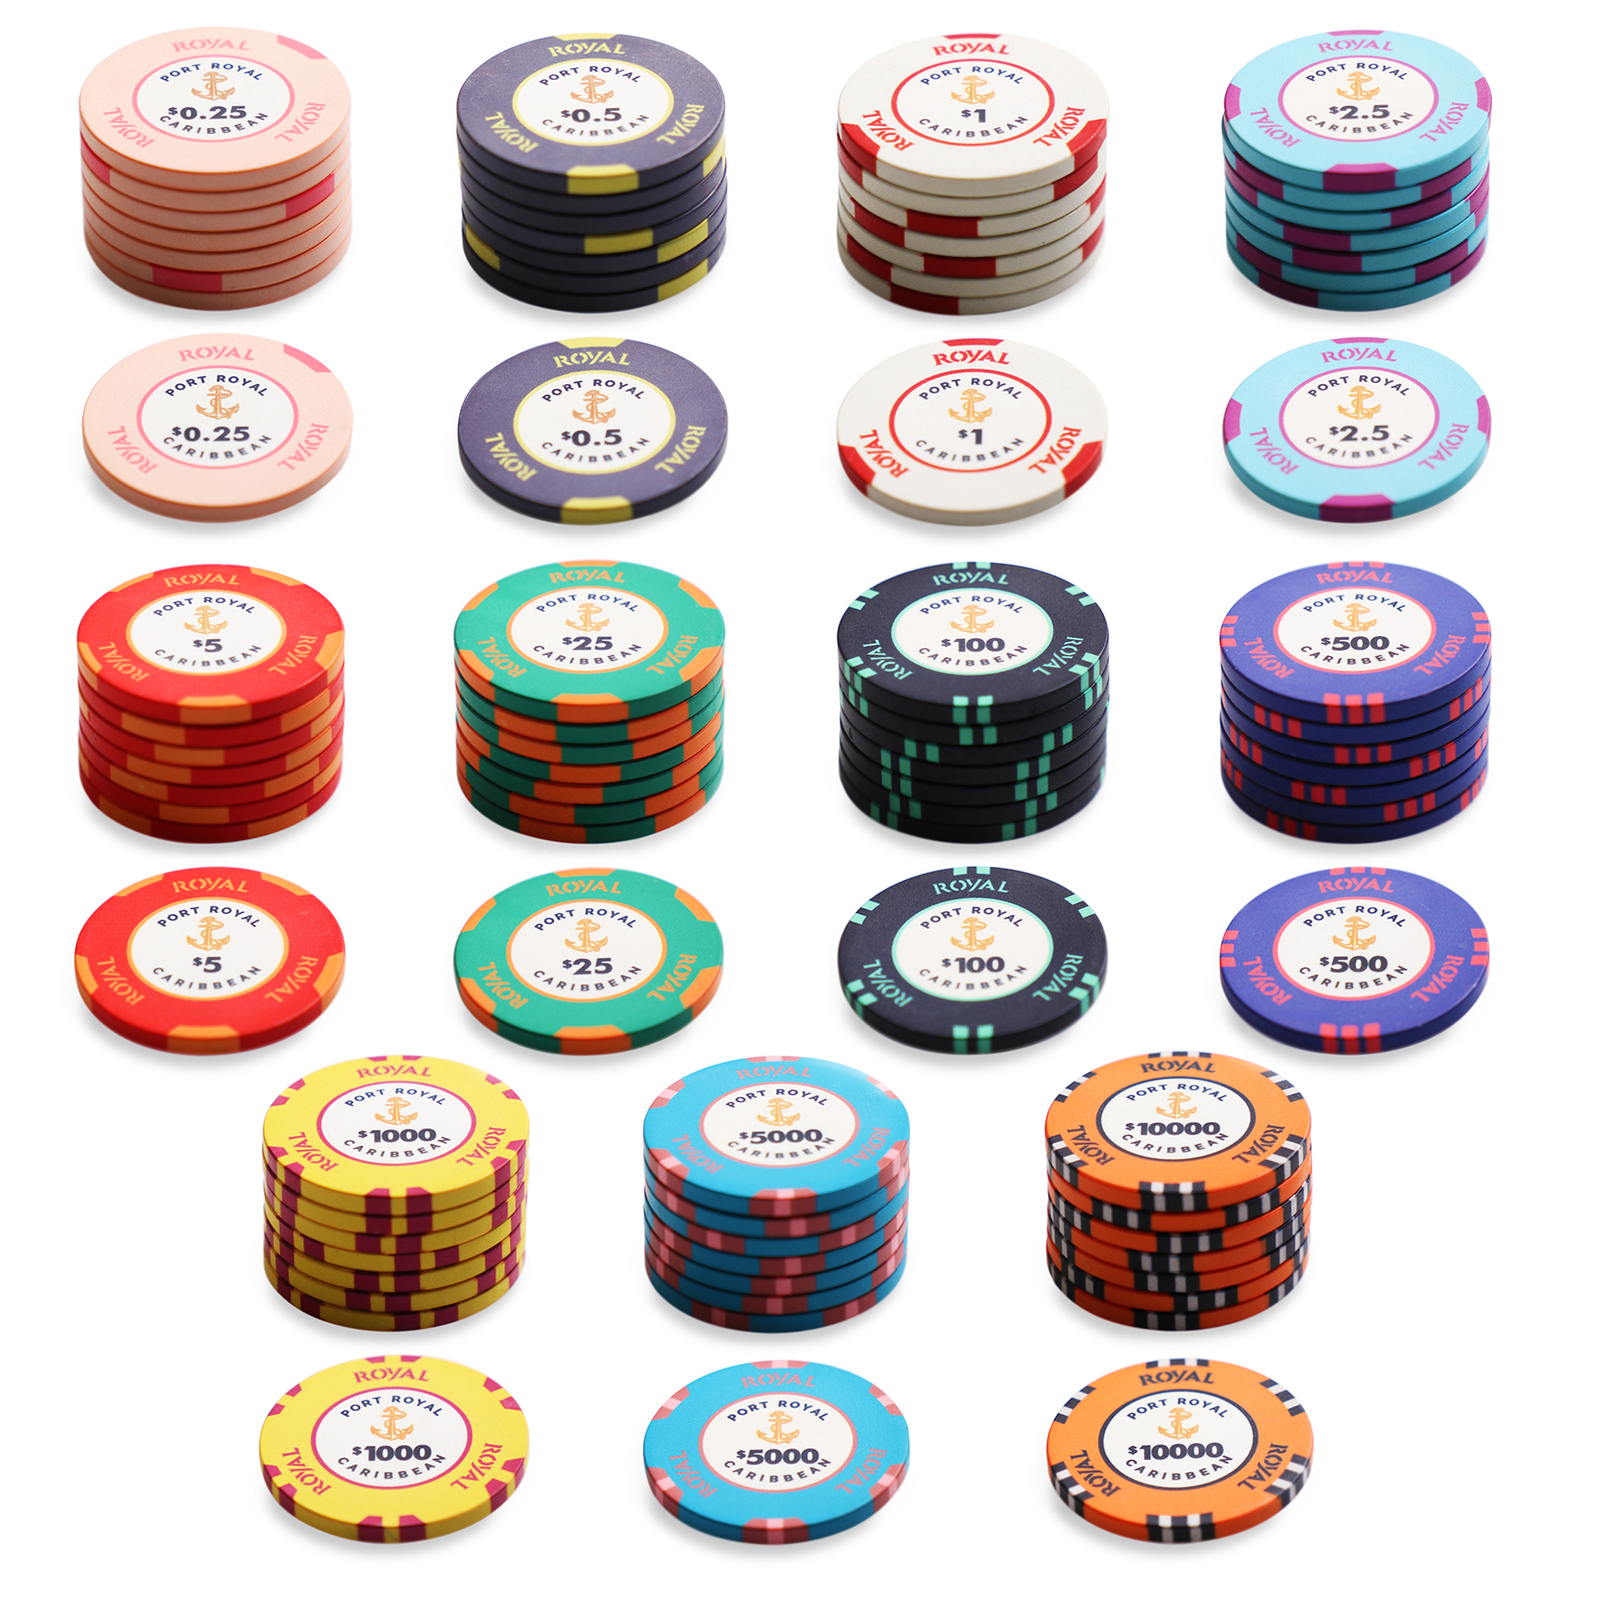 Port Royal Full Chip Range, Premium Bestselling Ceramic Poker Chips